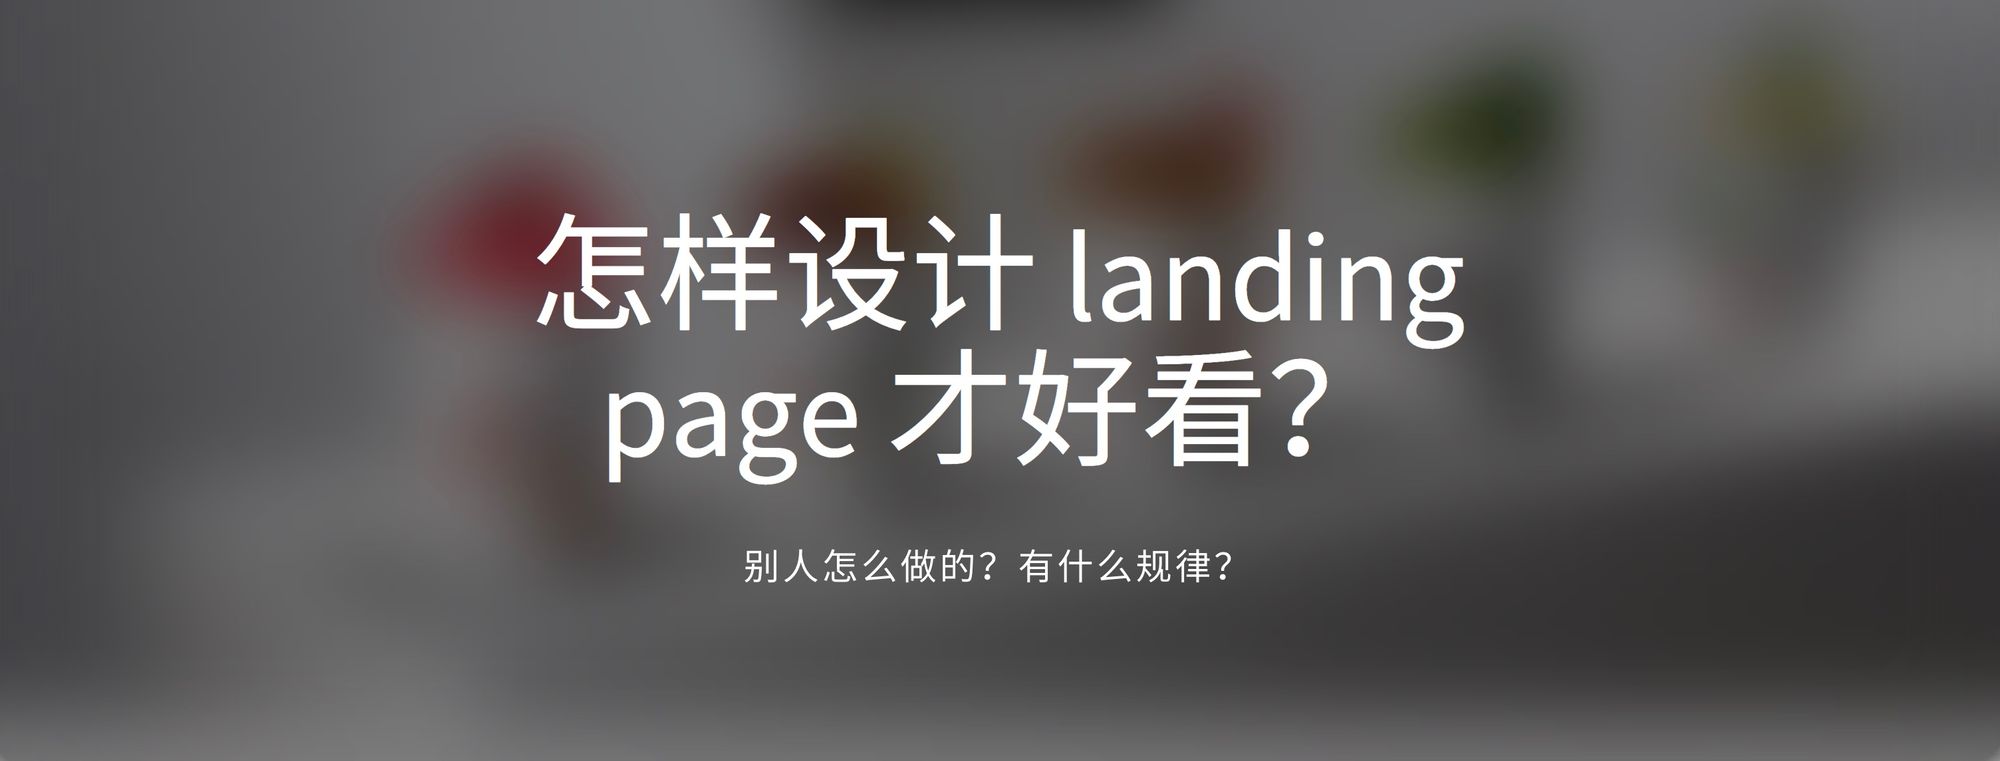 [设计] 怎样设计 landing page 才好看？